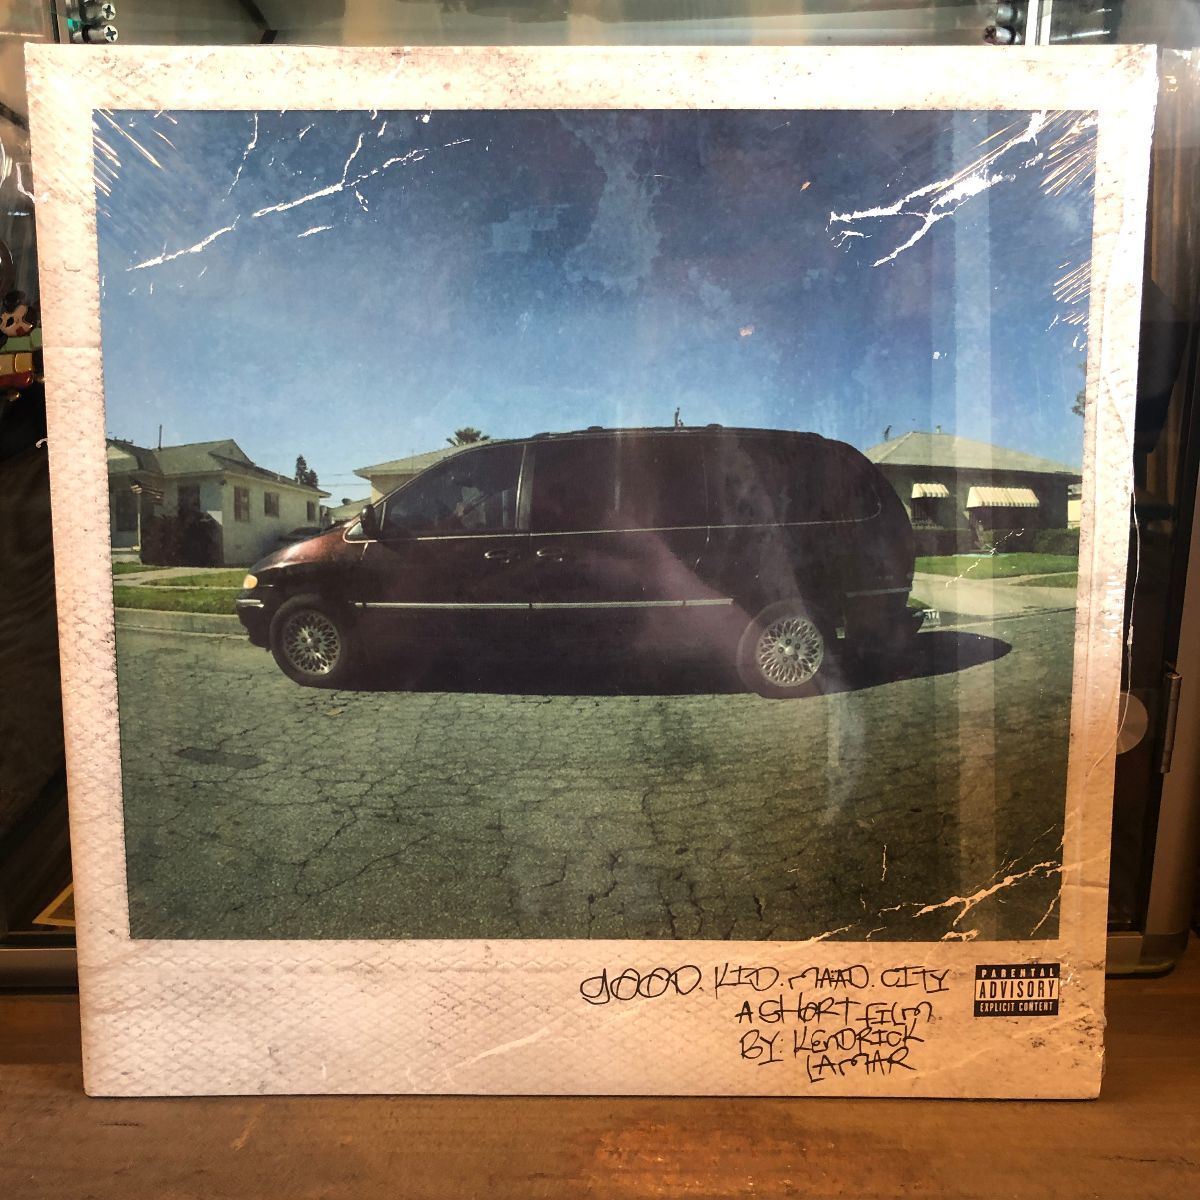 Kendrick Lamar good kid, m.A.A.d city Vinyl Record